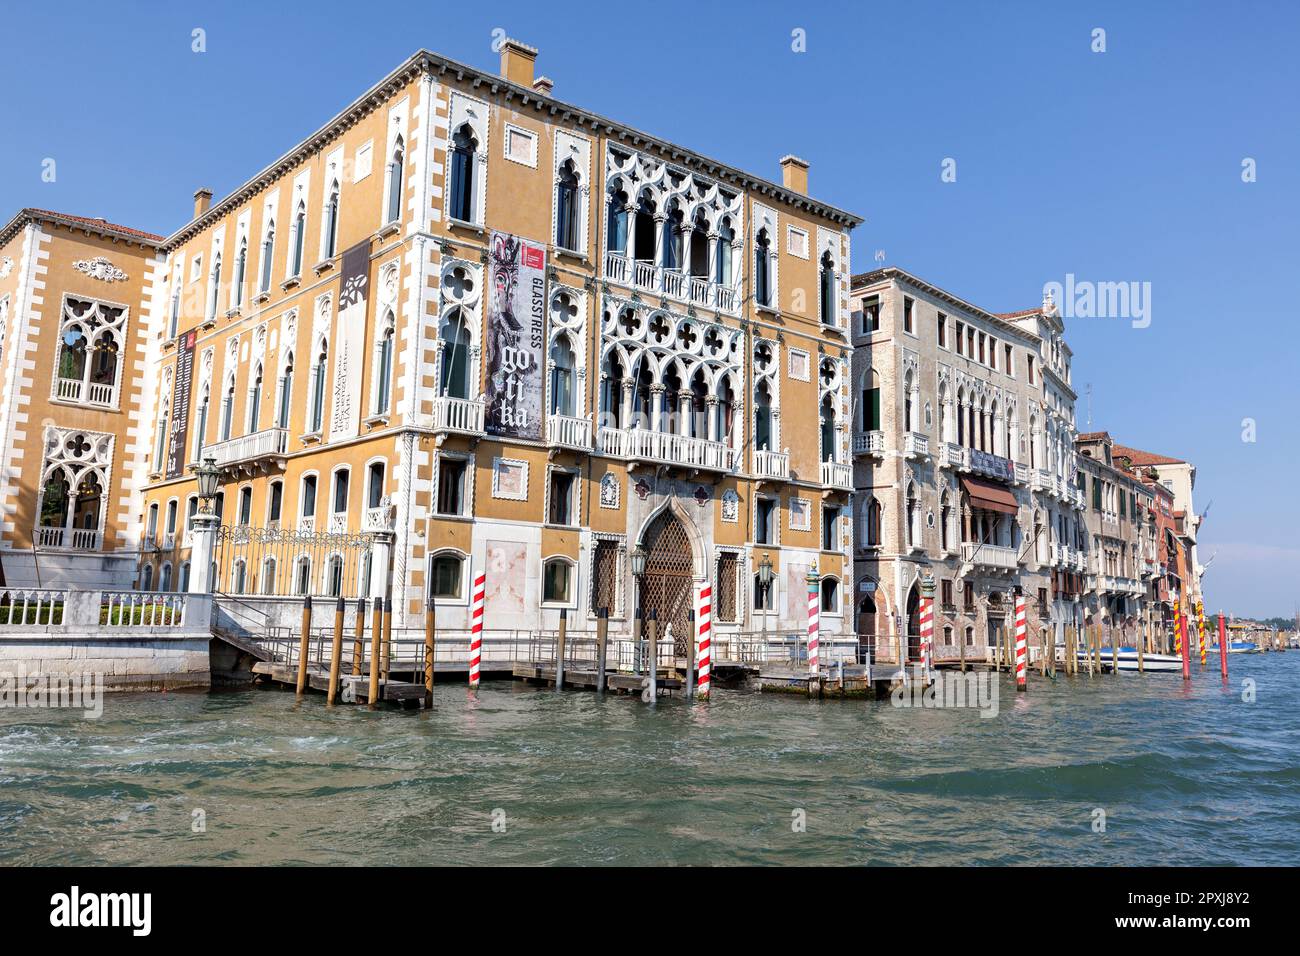 Palazzo cavalli-Franchetti, in stile gotico veneziano, sede dell'Istituto Veneto di Scienze, lettere ed Arti, San Marco, Canal grande, Venezia Foto Stock